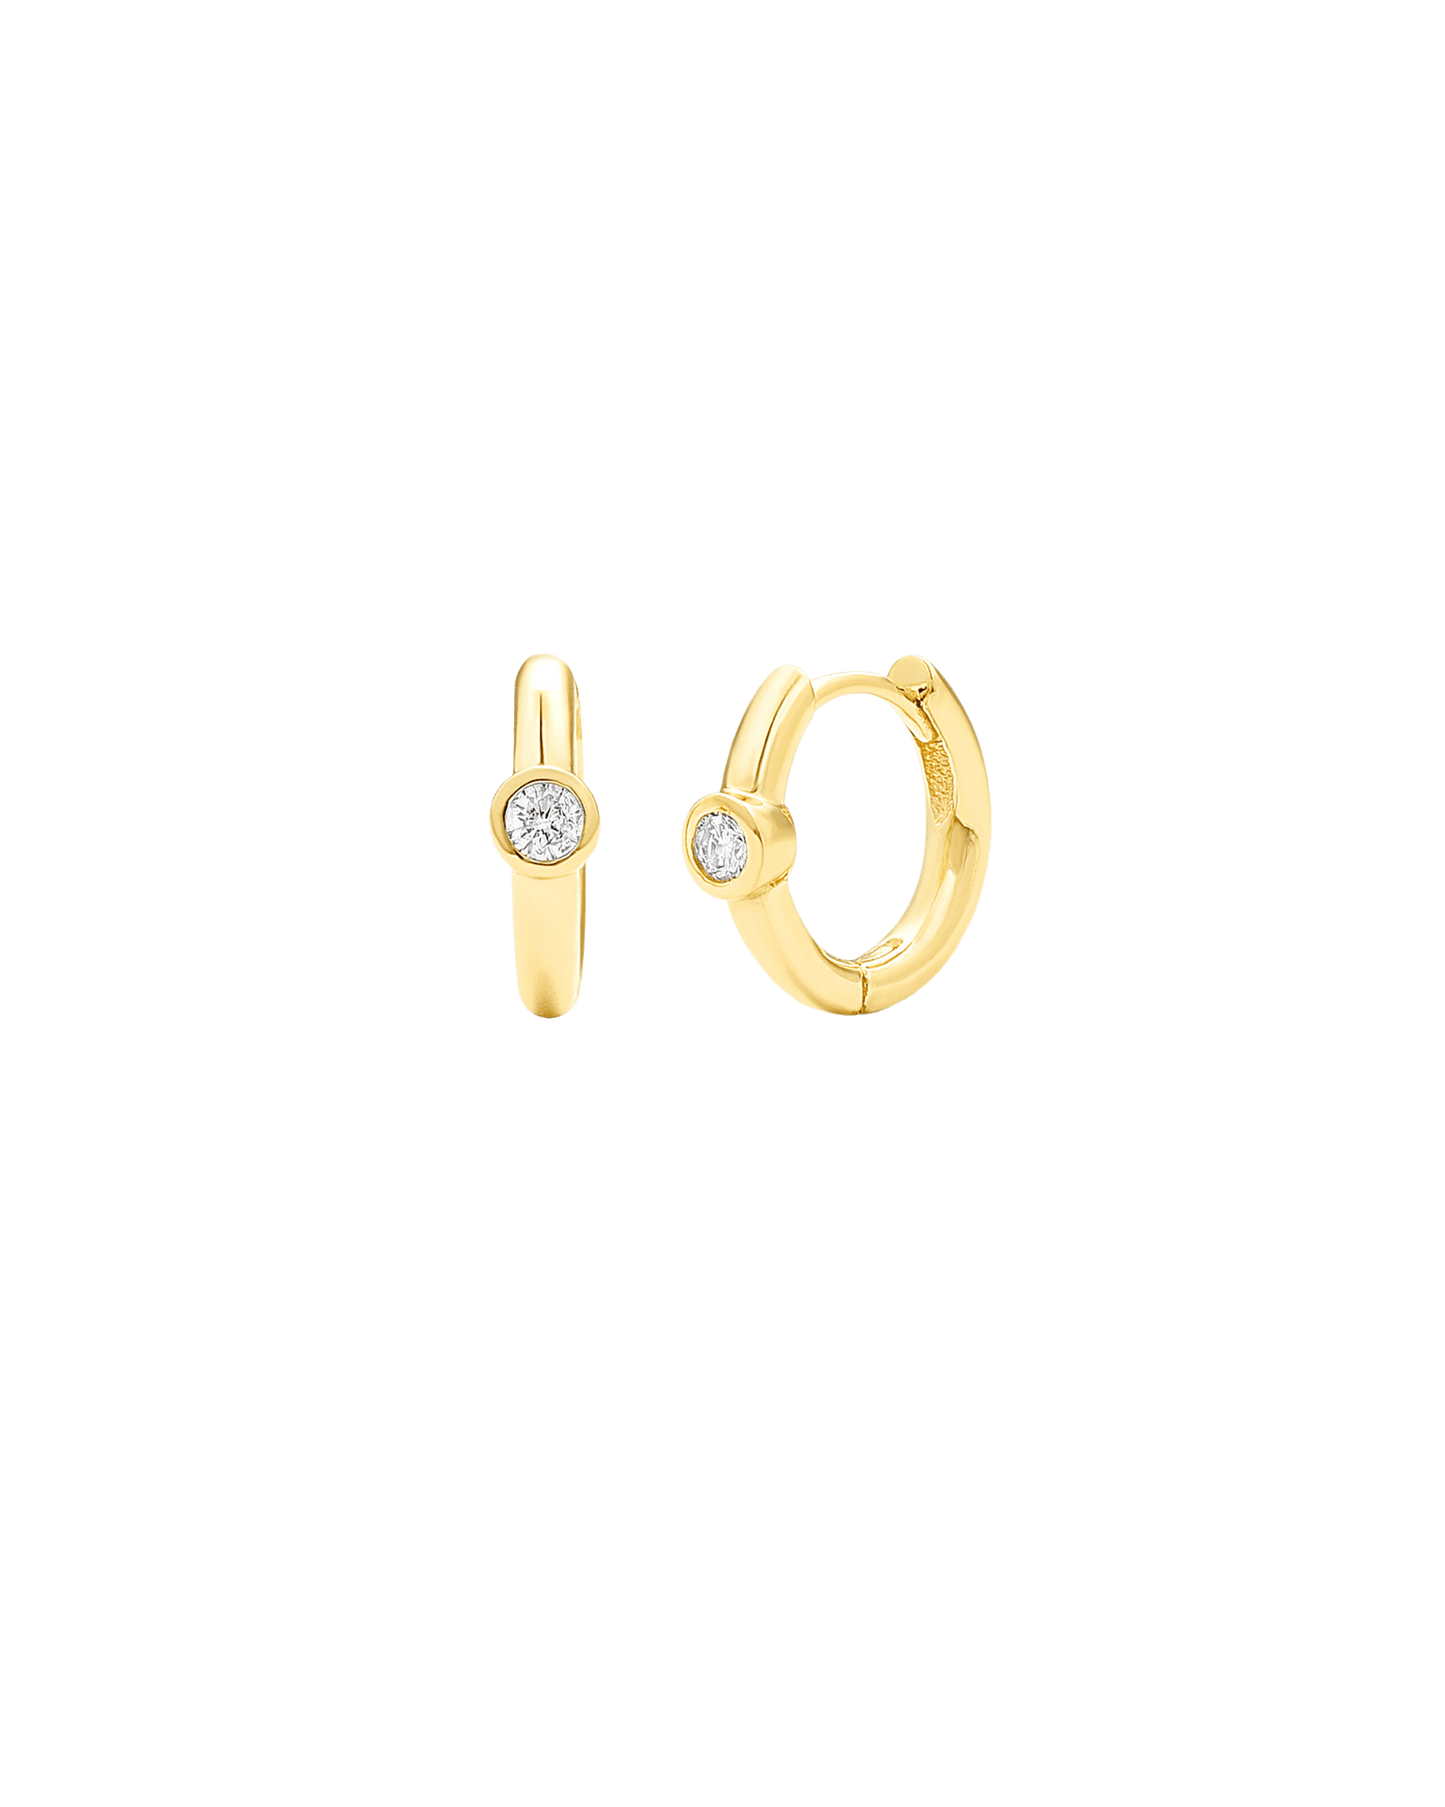 Diamond Bezel Hoops Earring - 14K White Gold Earrings magal-dev 